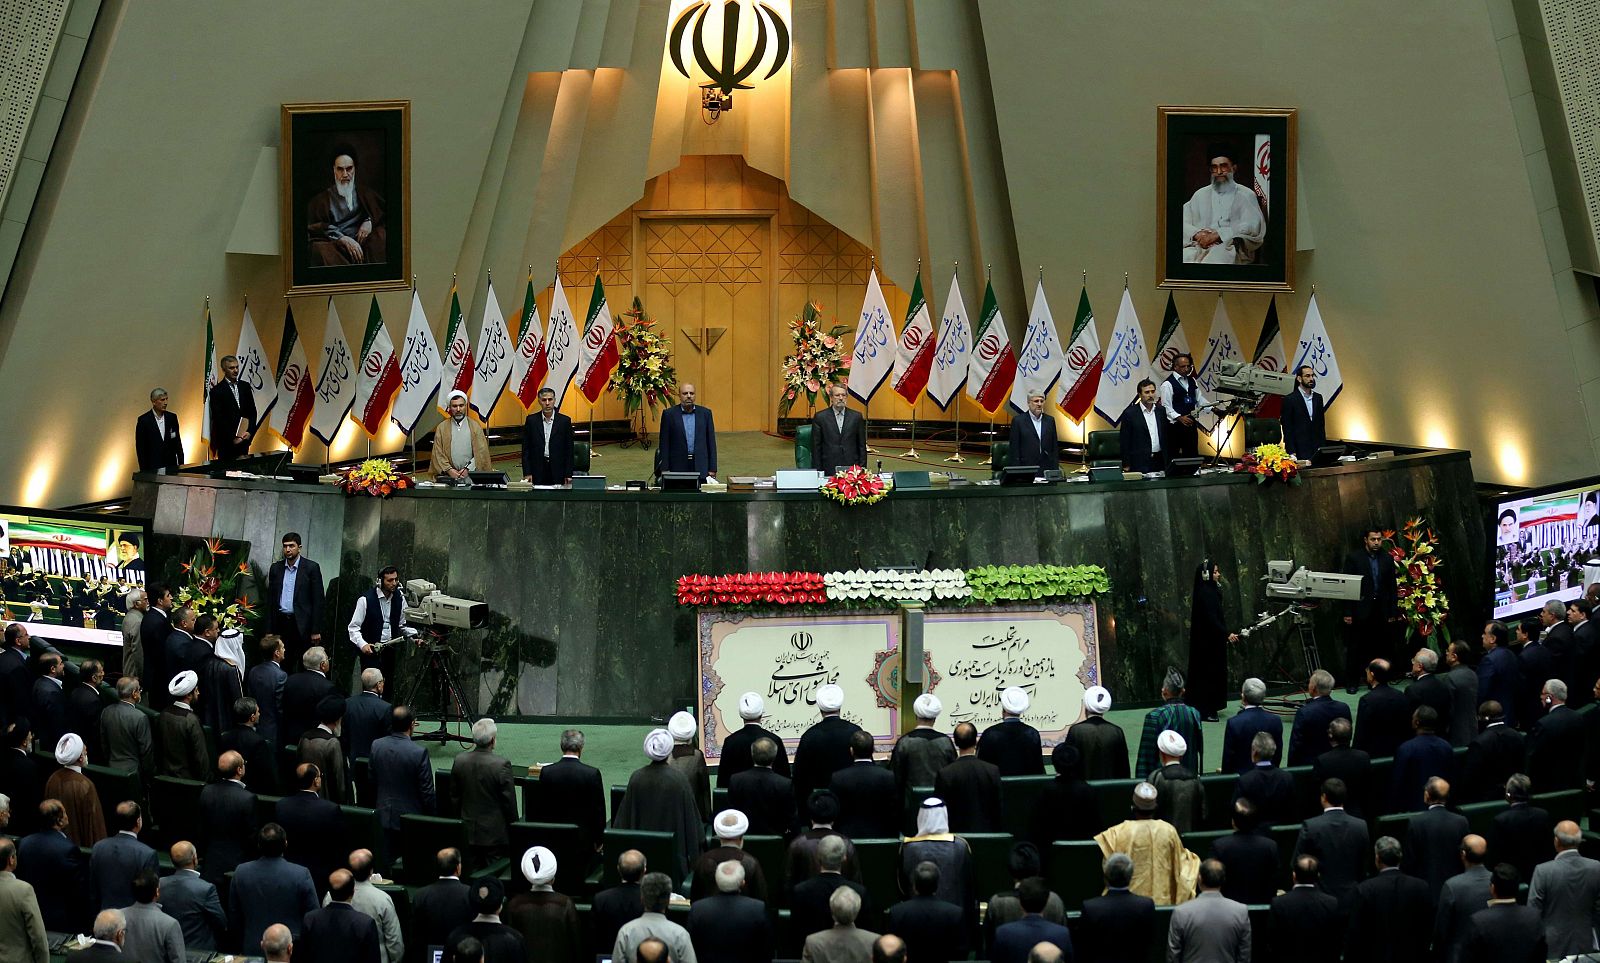 Vista general del parlamento en Teherán, en Irán, durante la toma de posesión del nuevo presidente Hasan Rowhani el pasado 4 de agosto de 2013.